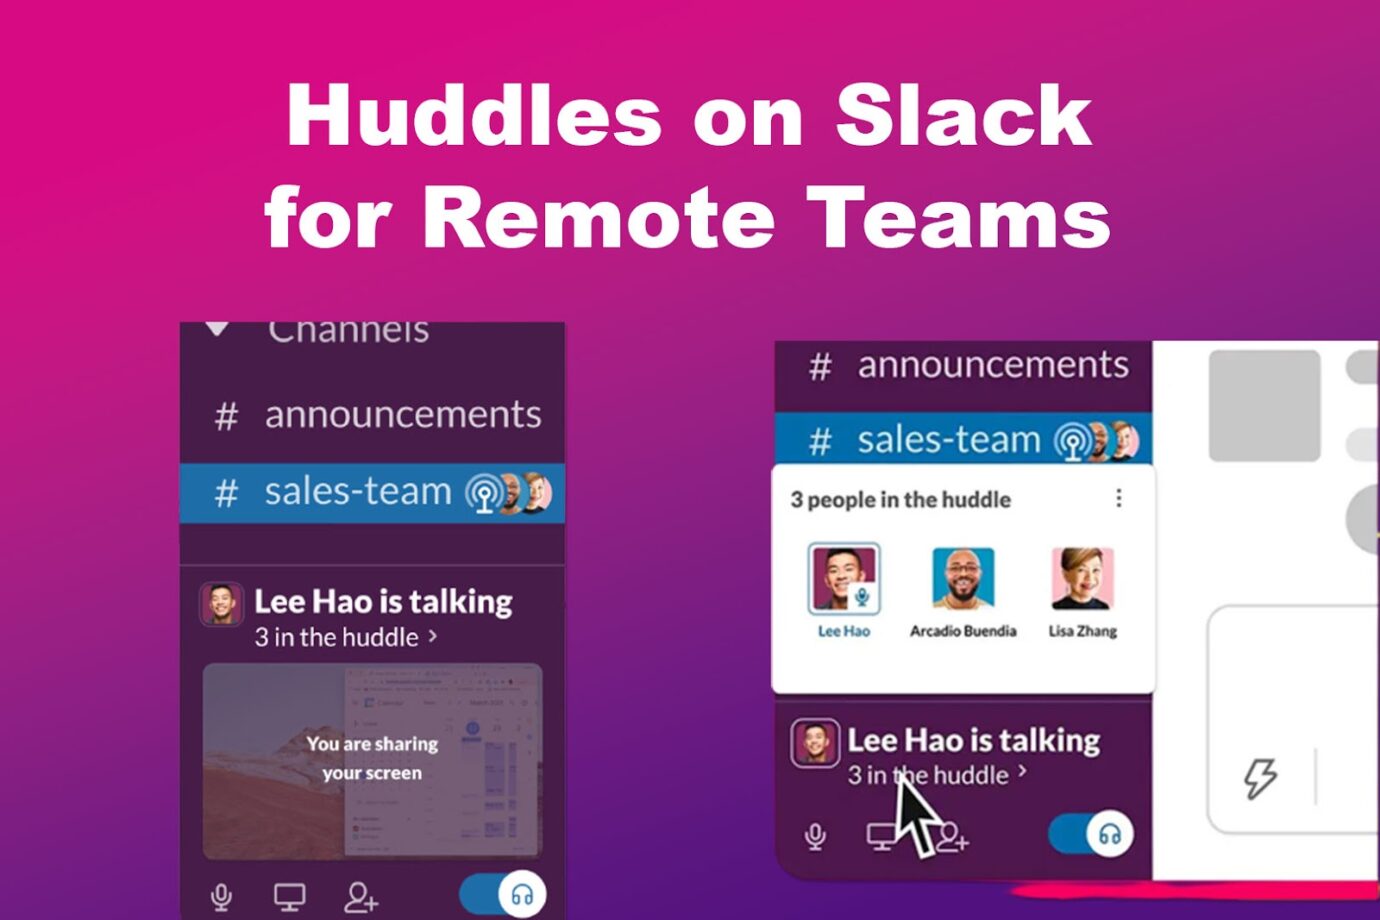 Huddles on Slack for Remote Teams